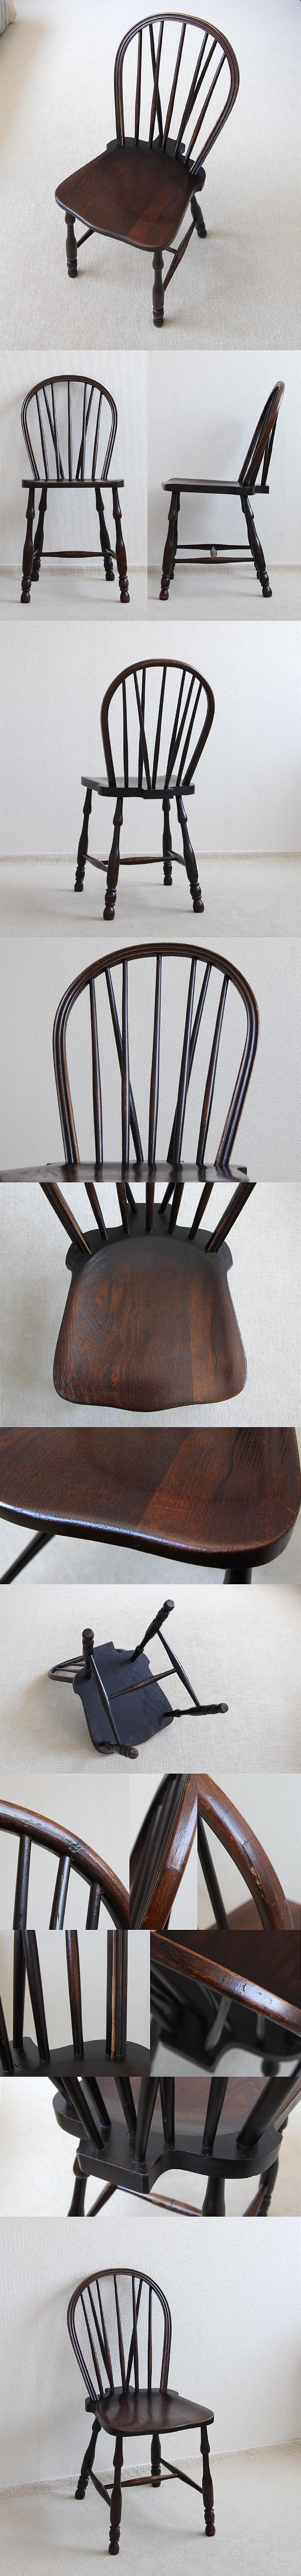 イギリス アンティーク キッチンチェア 木製椅子 ウィンザー 無垢材 家具「ボウバックチェア」V-660